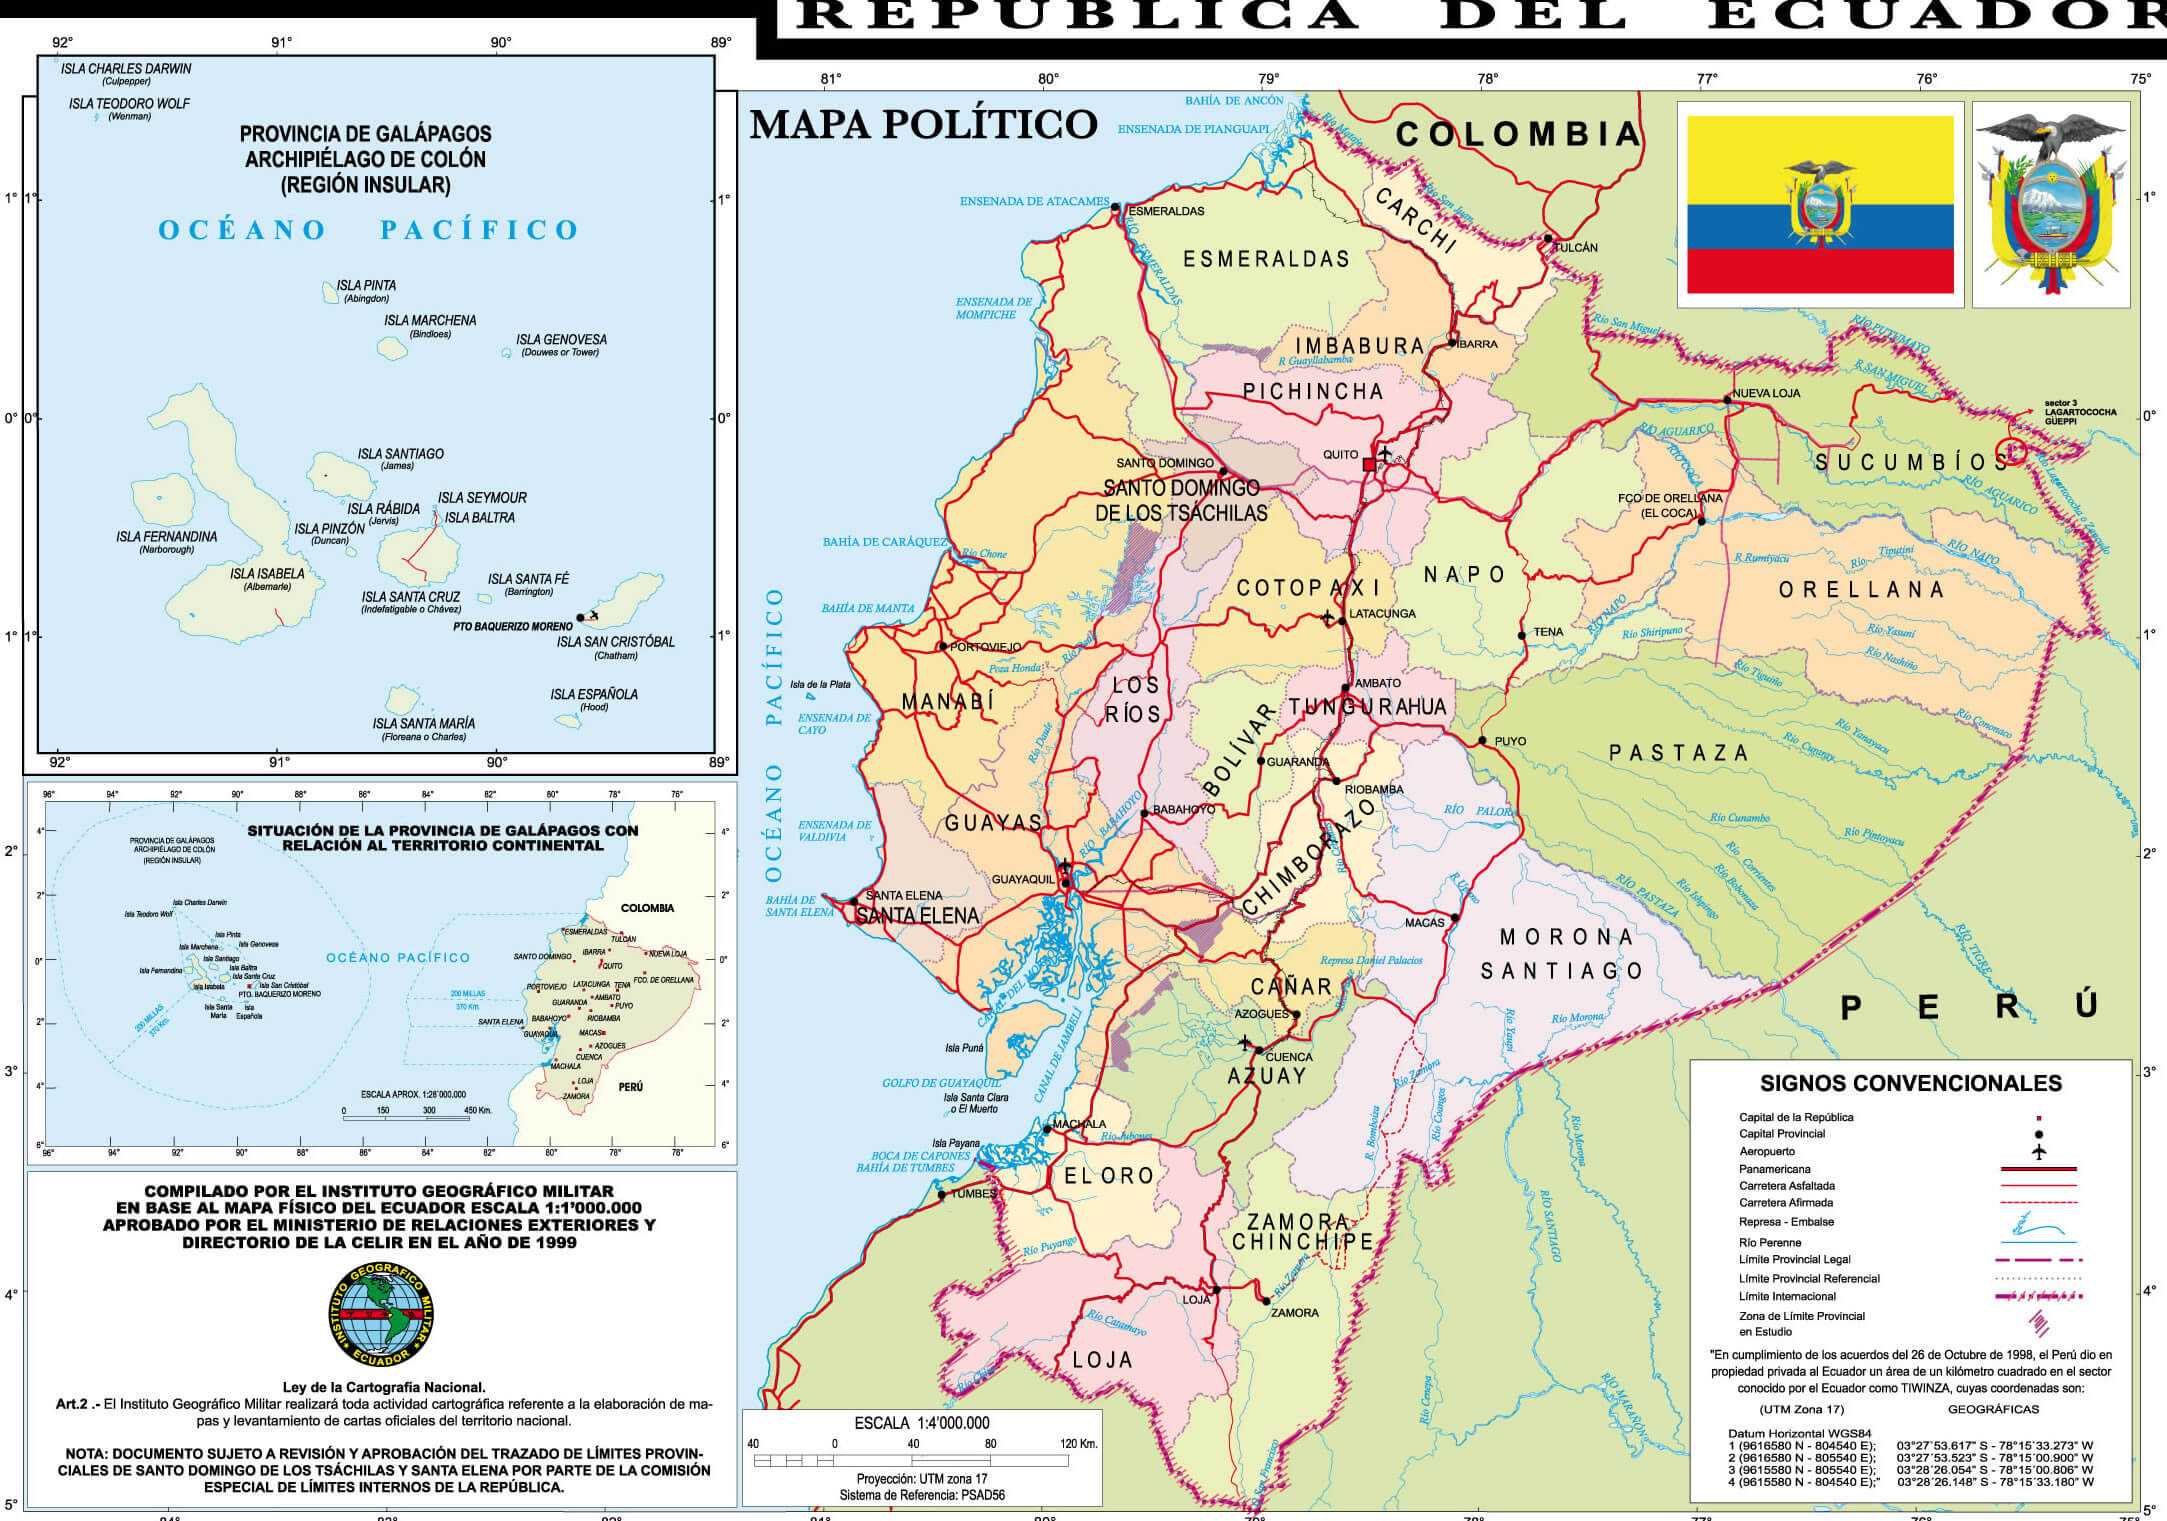 Political Map of Ecuador 1999